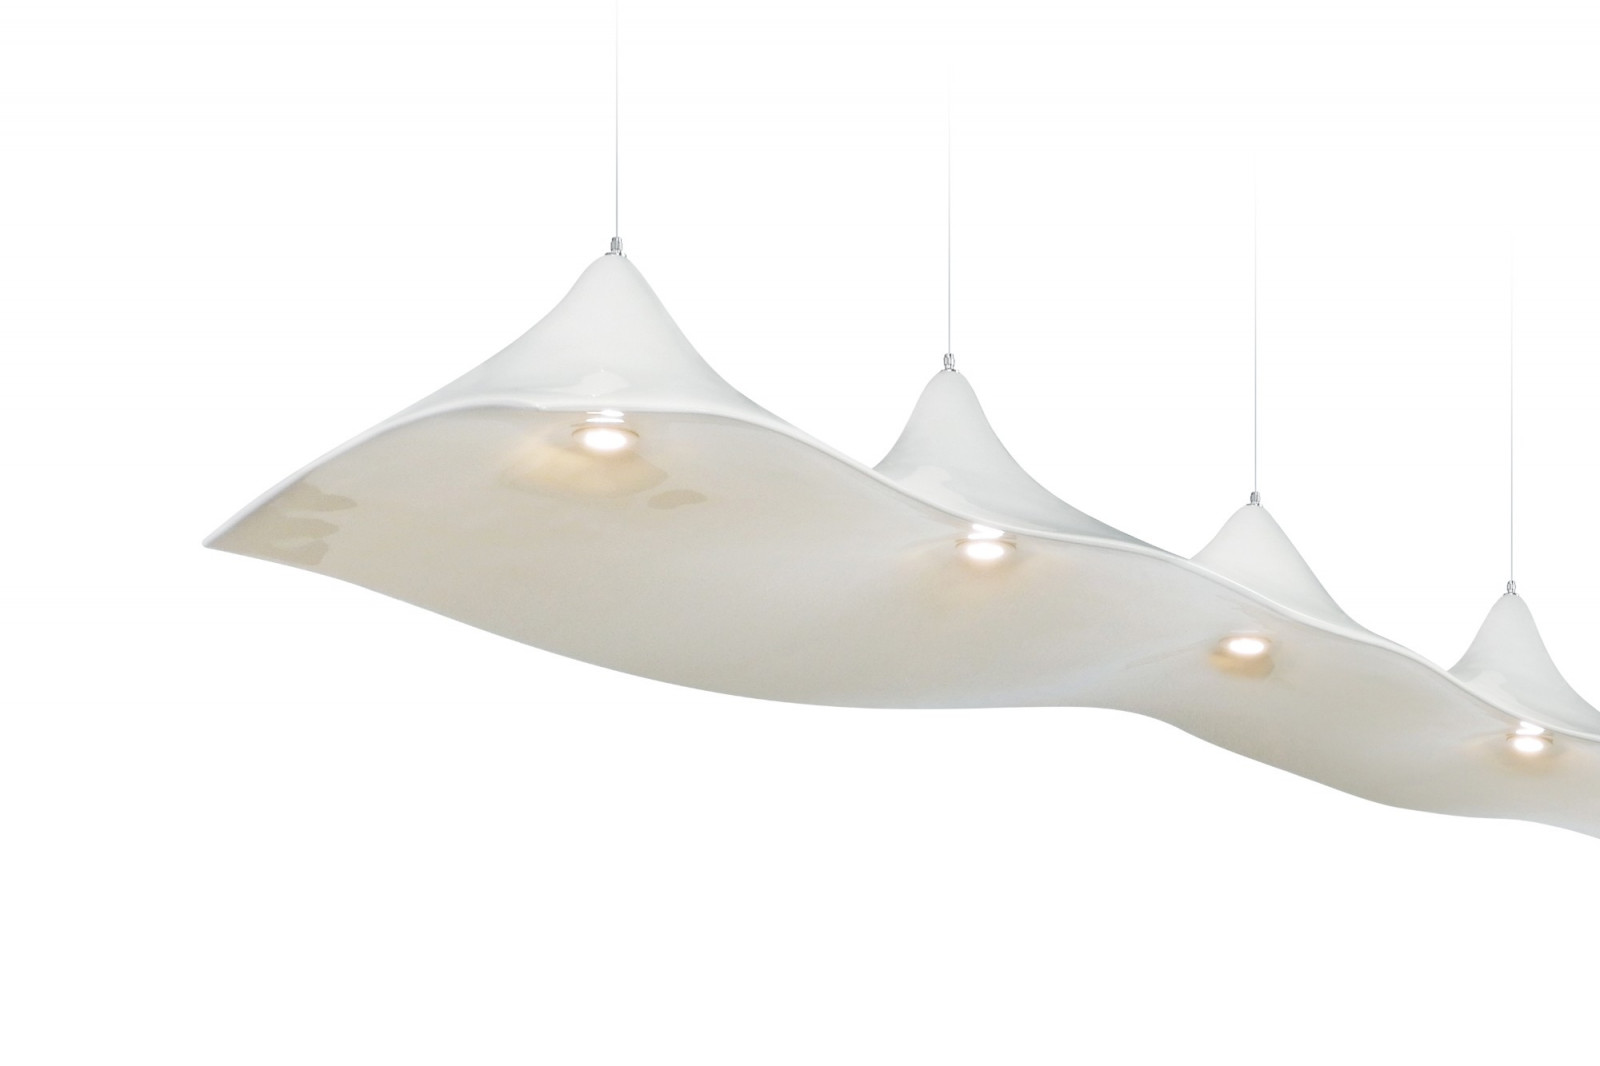 suspension-lamp-elegant-modern-luxurious-high-gloss-white-amplus-gansk-3-1485-1600-1400-100